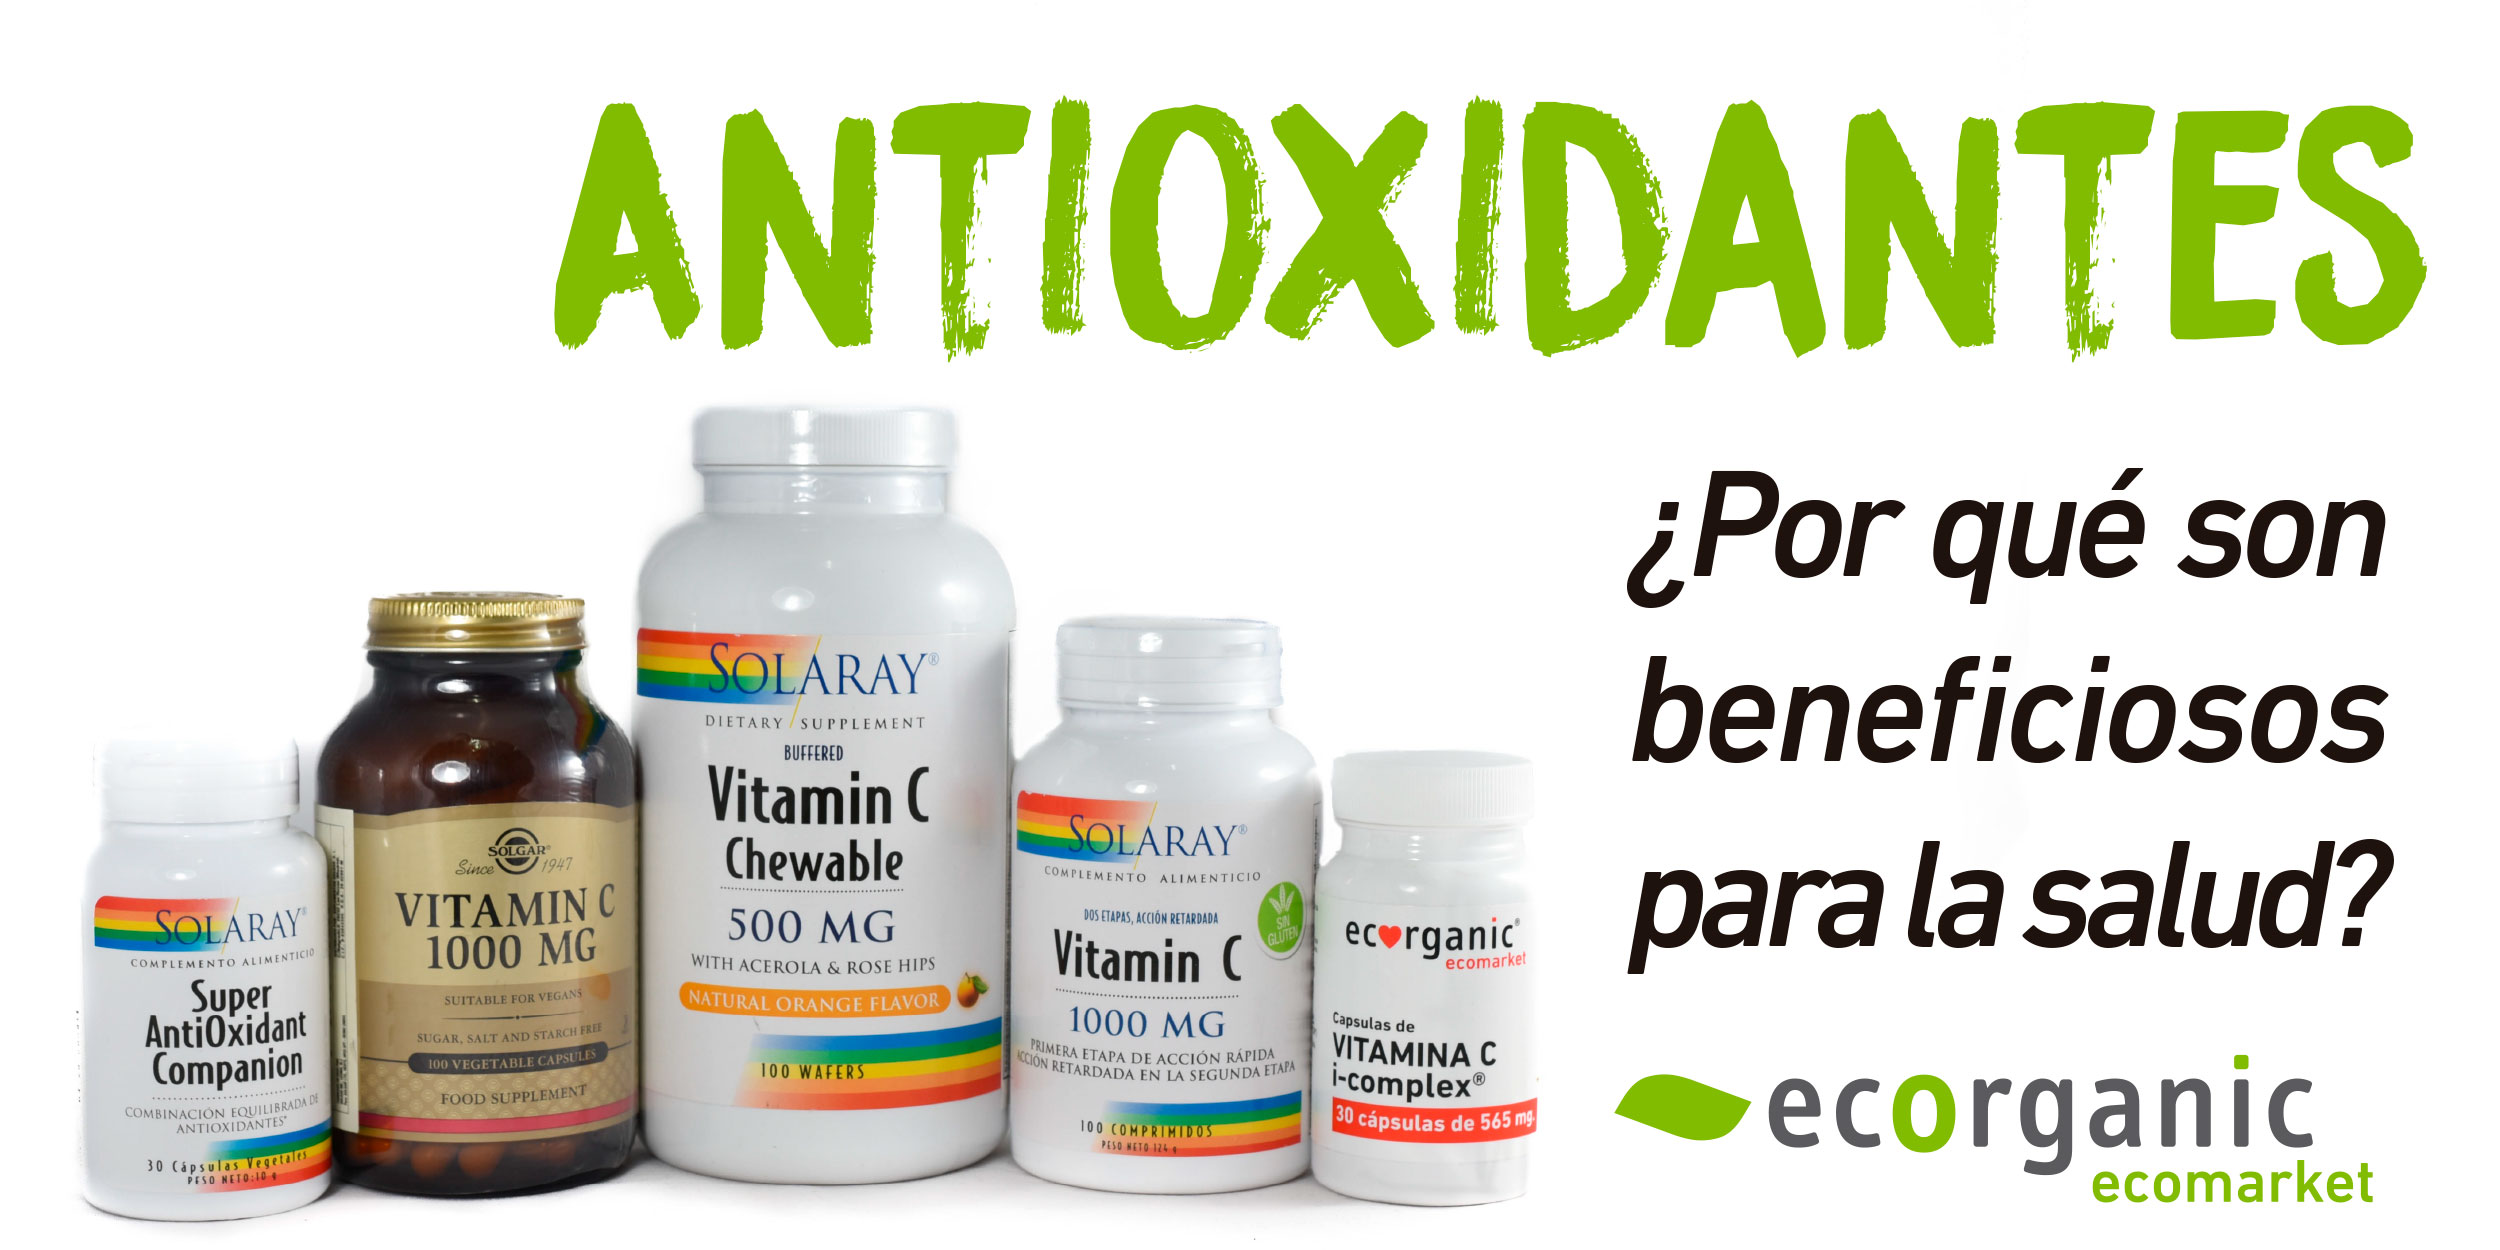 10 Antioxidantes beneficiosos para la salud